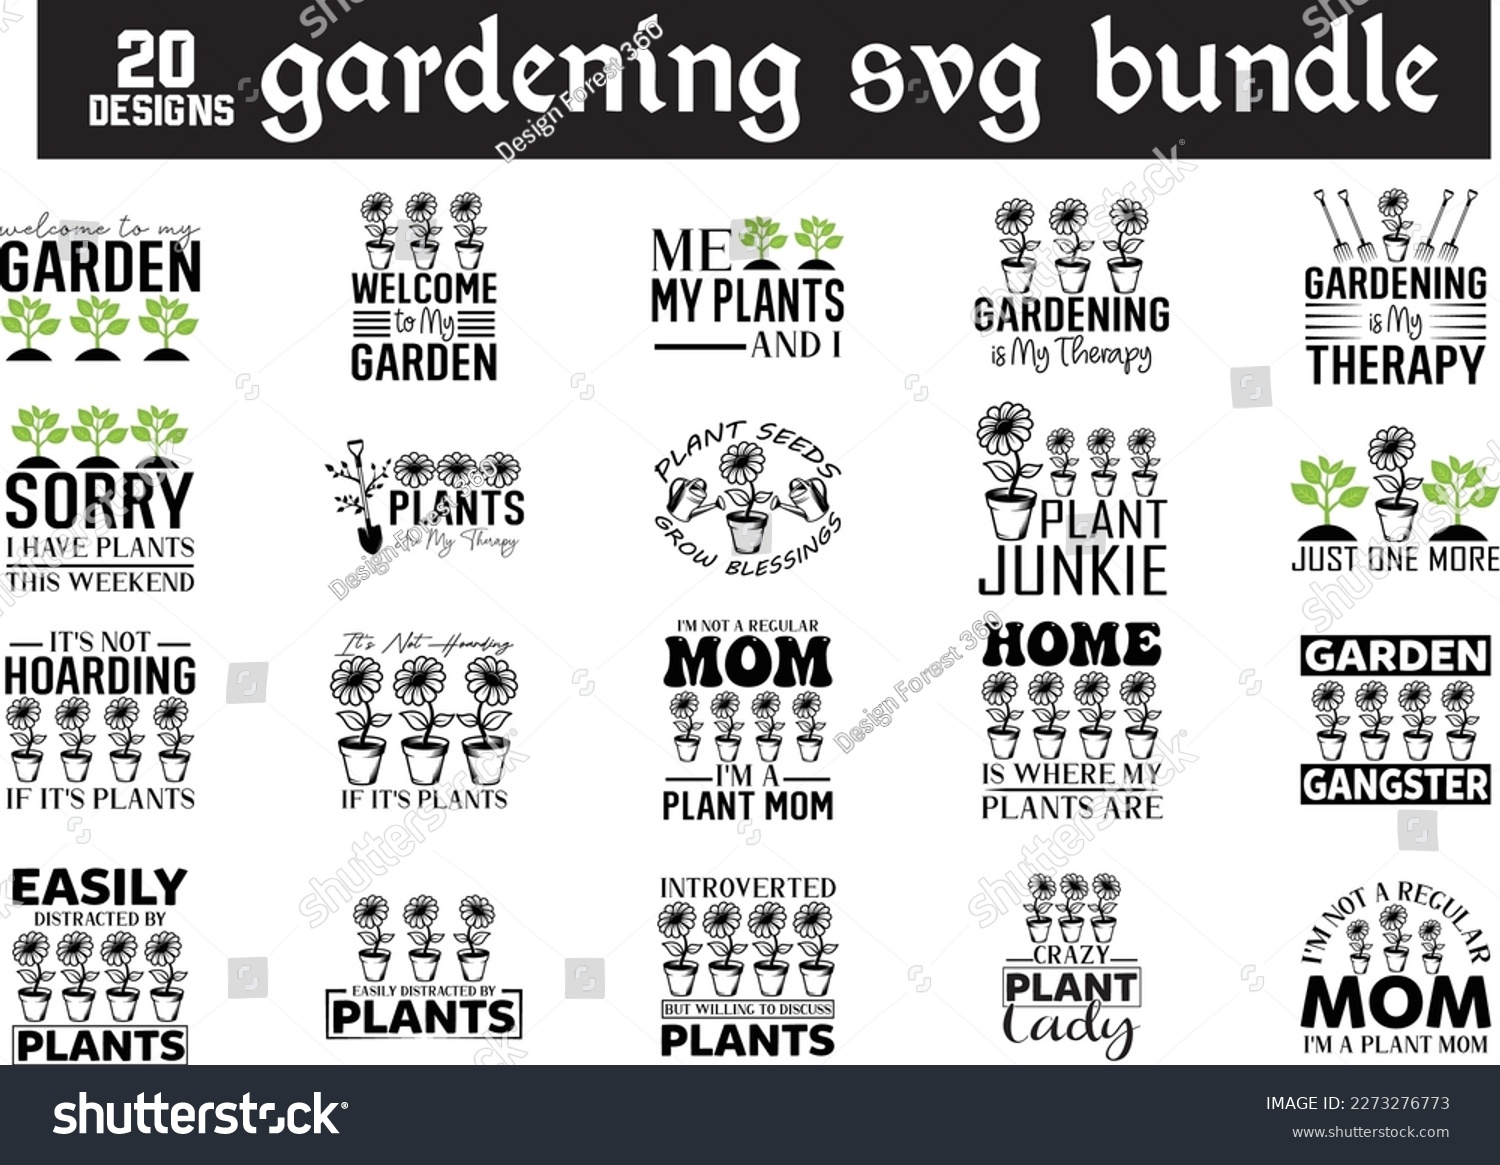 SVG of gardening svg design, gardening svg bundle svg